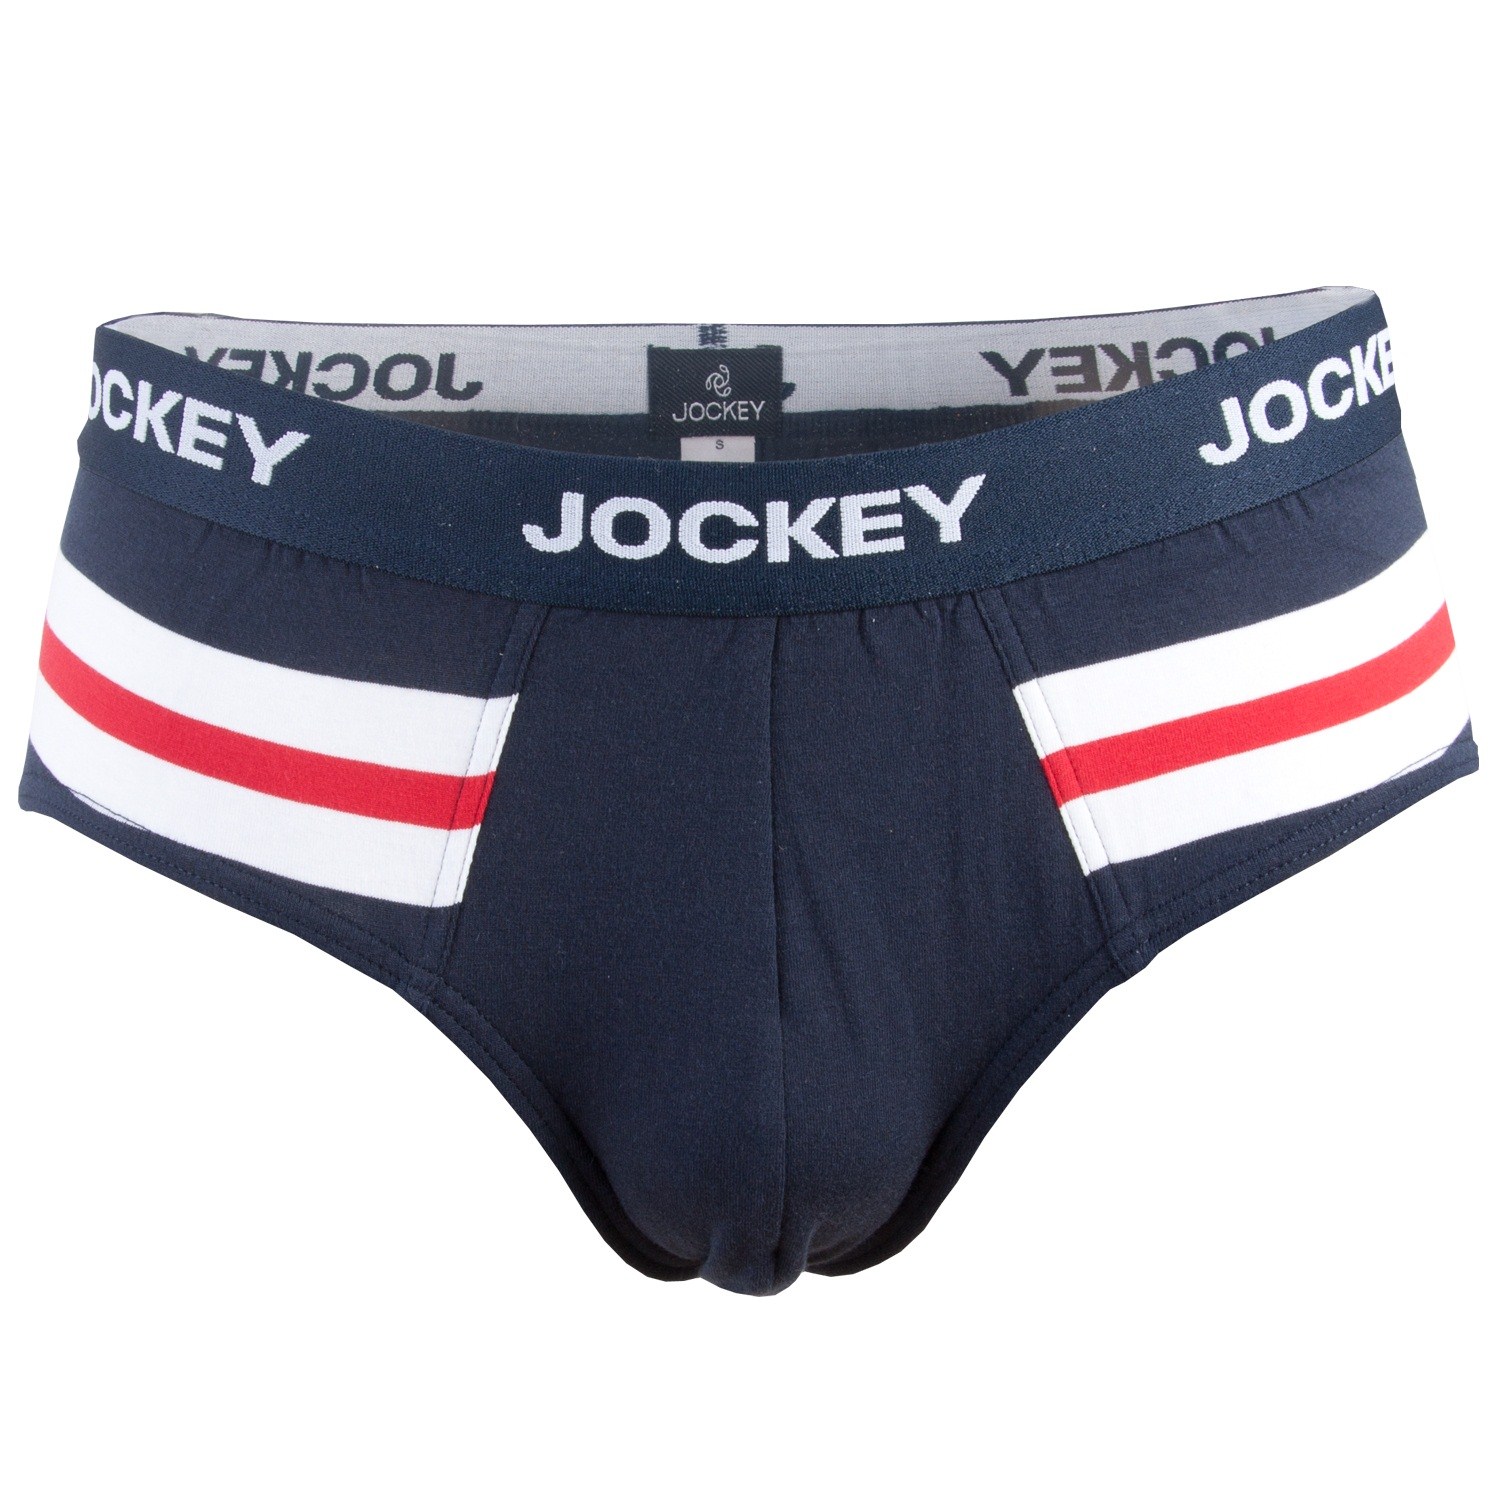 Jockey Retro Brief 161101 - Brief - Trunks - Underwear - Timarco.co.uk